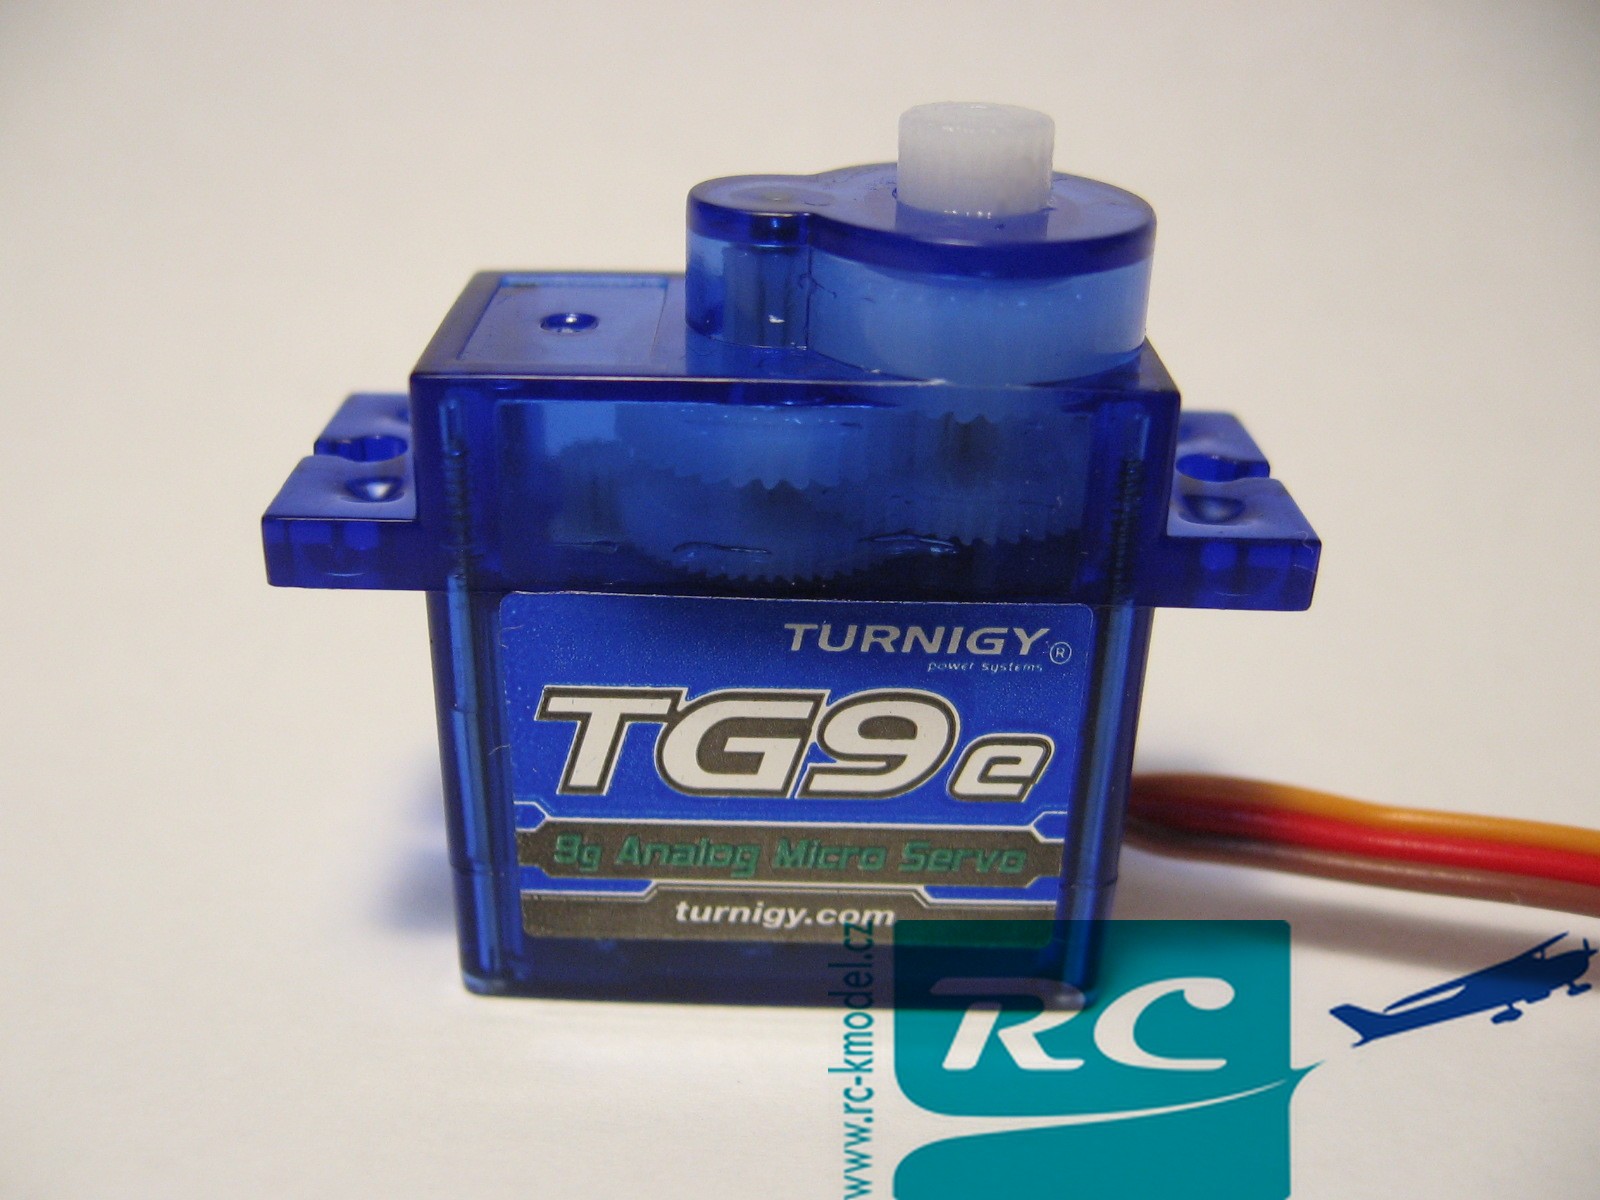 Servo Turnigy TG9e 9g - 1.5kg - verze s dlouhým kabelem 